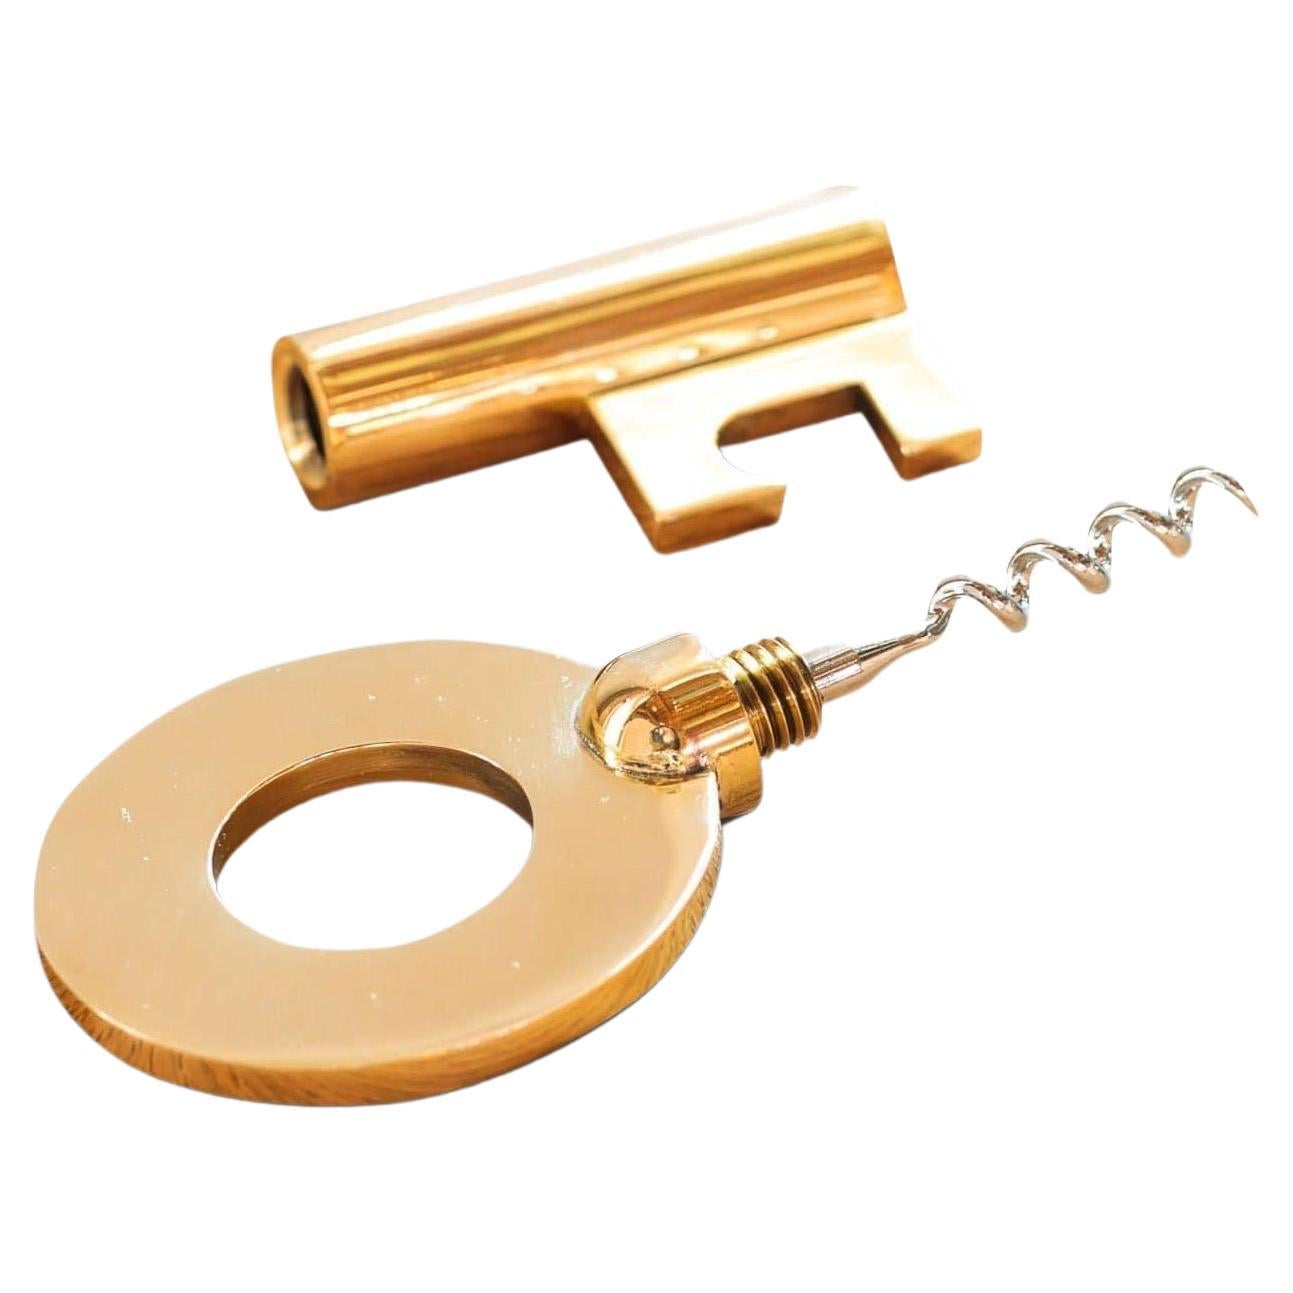 Brass Key Corkscrew by Carl Aubock For Sale